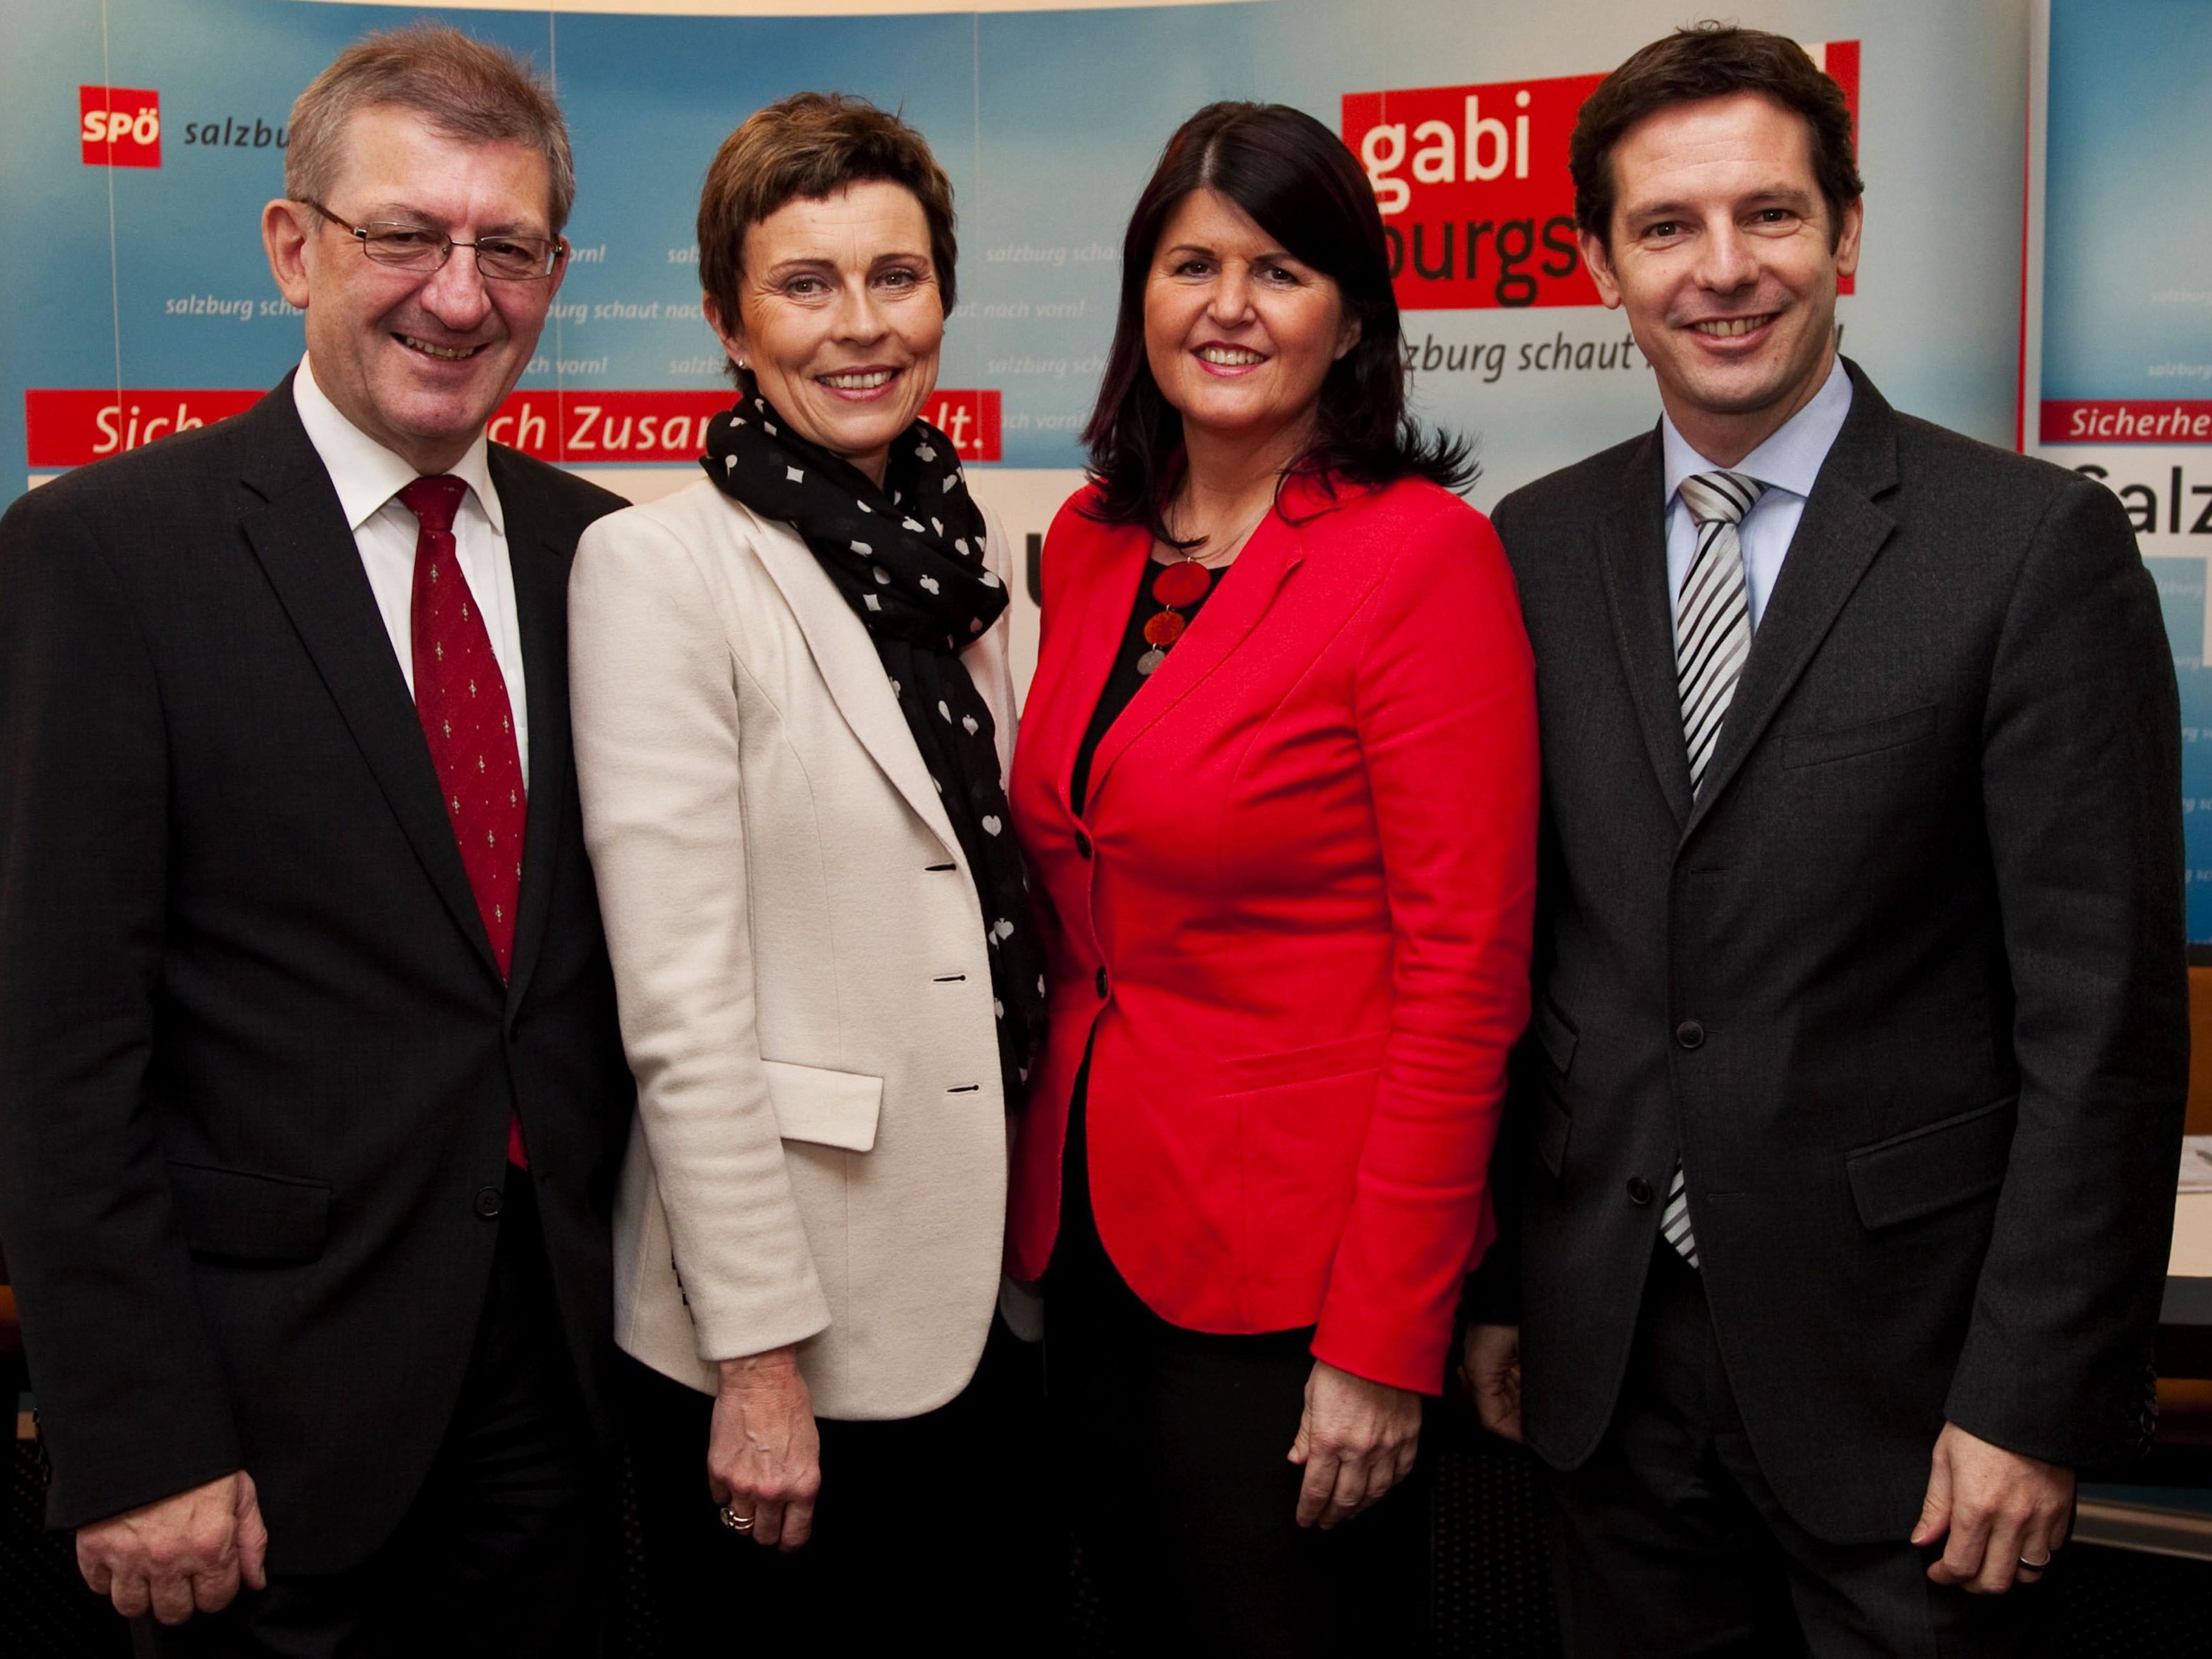 Im Rahmen einer Pressekonferenz in Salzburg präsentierte das Regierungsteam der Salzburger SPÖ seine Arbeitsschwerpunkte für das Jahr 2012.